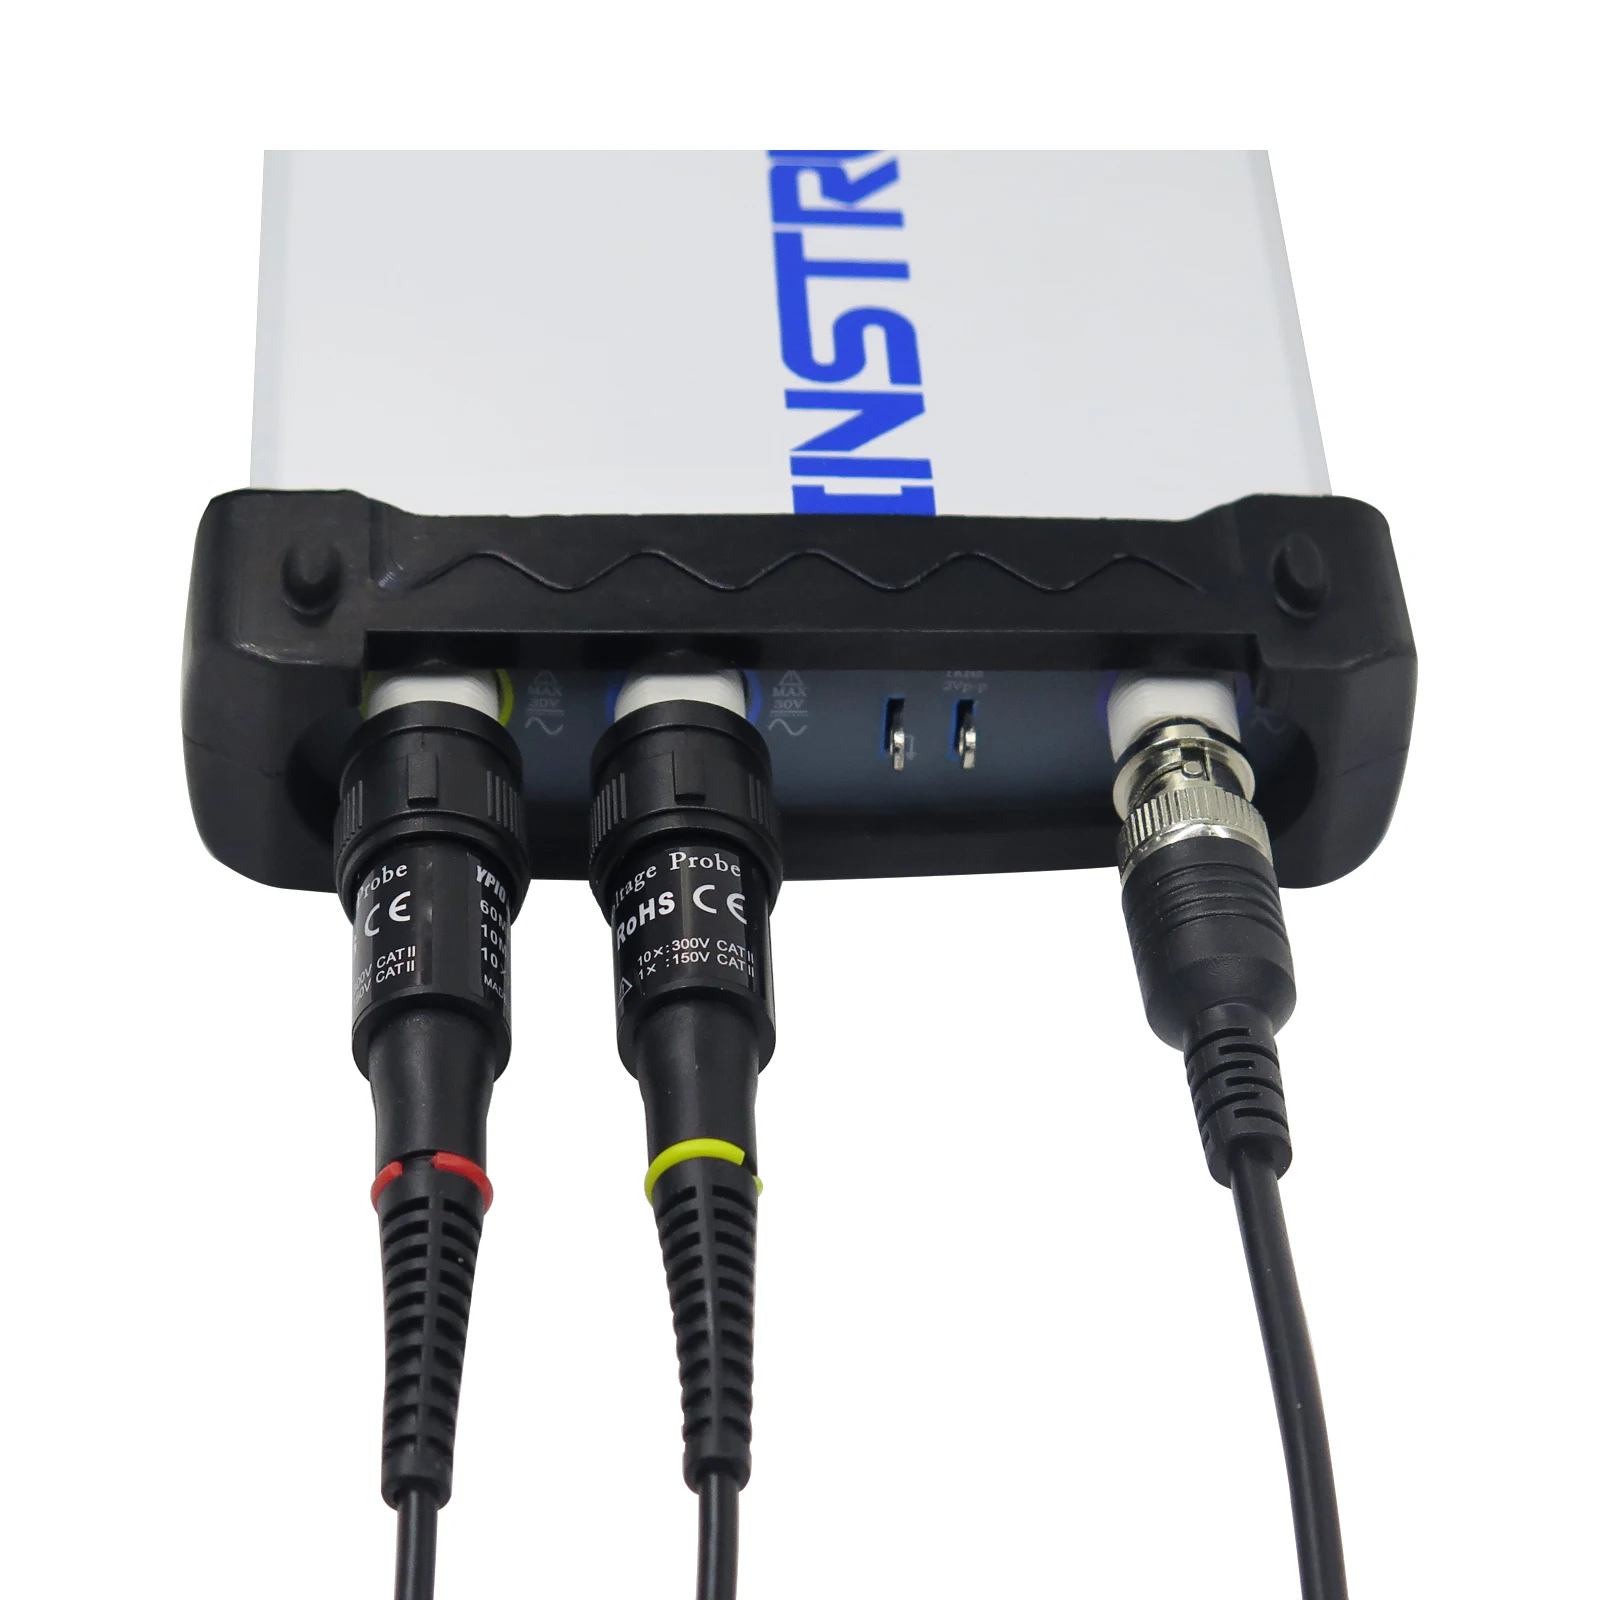 ISDS205B 5 в 1 Многофункциональный ПК на базе USB цифровой осциллограф/анализатор спектра/DDS/развертки/Регистратор данных 20 м 48 мс/с